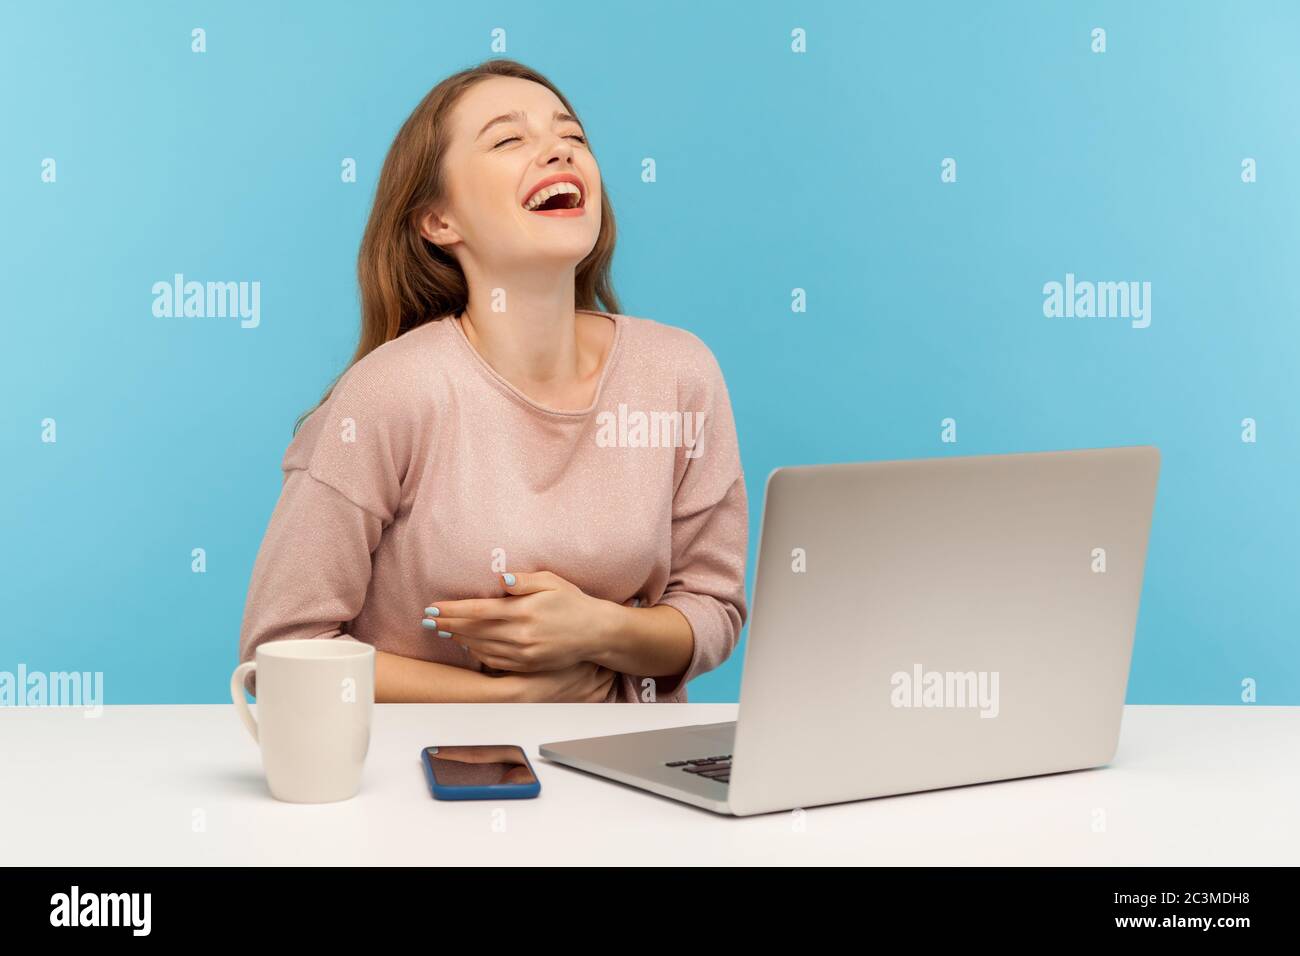 Une femme heureuse et amusante, qui rit à voix haute, tient le ventre et se fait hystérie par une blague folle sur un ordinateur portable, se faisant une pause au bureau à domicile Banque D'Images